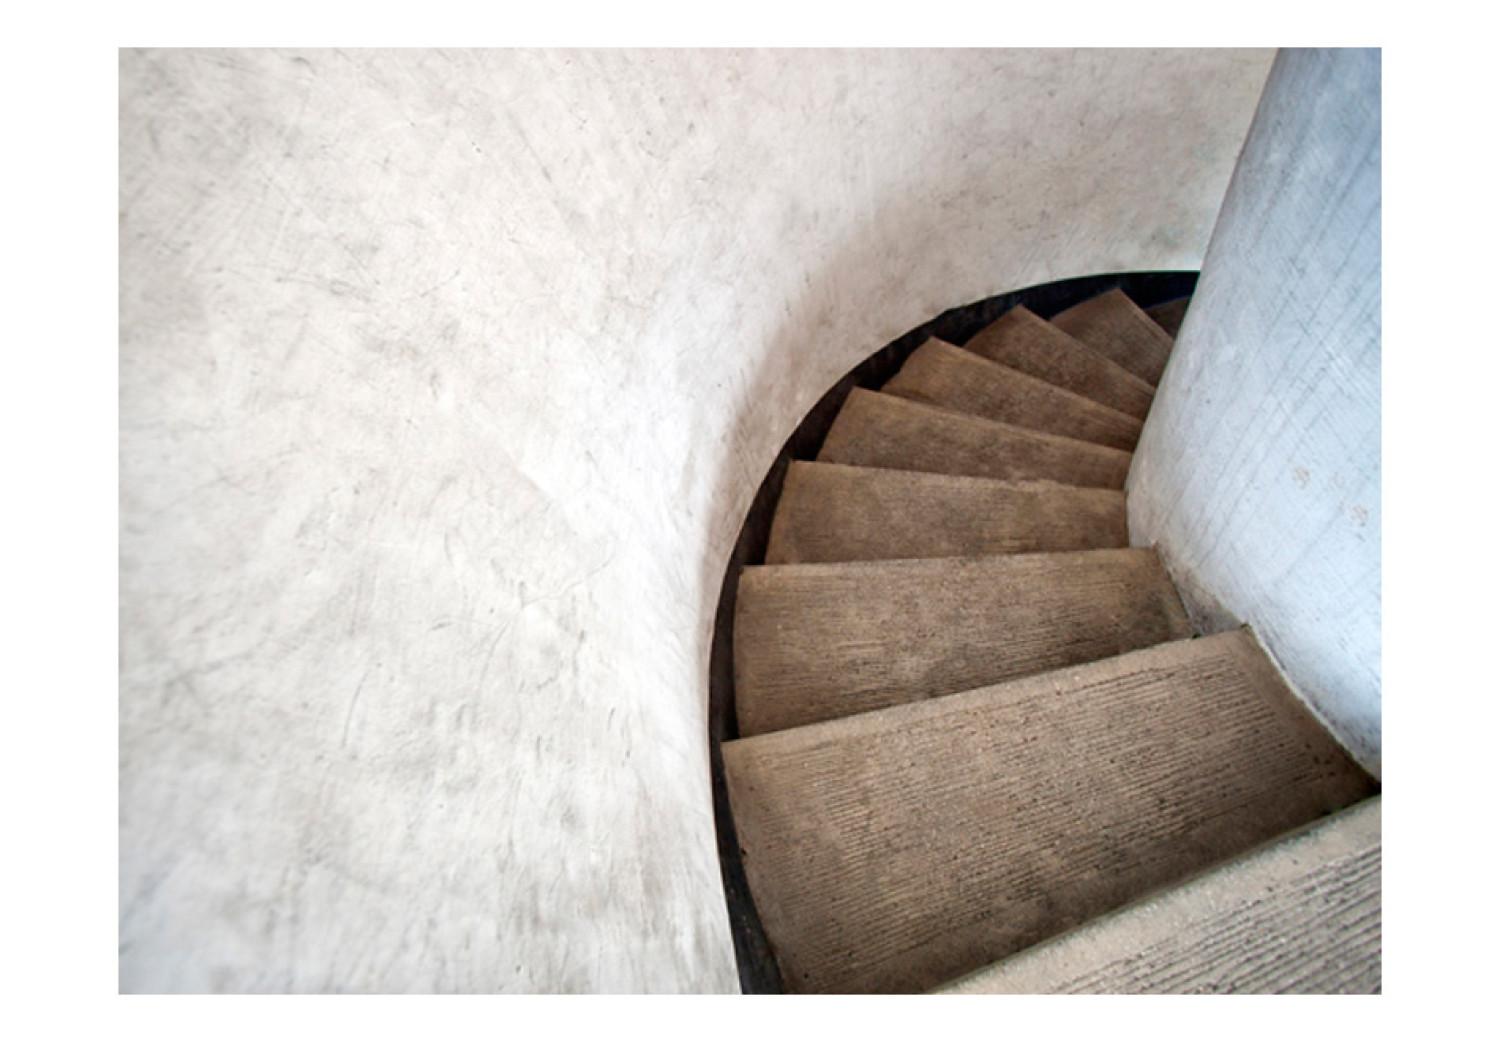 Fotomural a medida Arquitectura interior - espacio con ilusión 3D de escaleras curvas